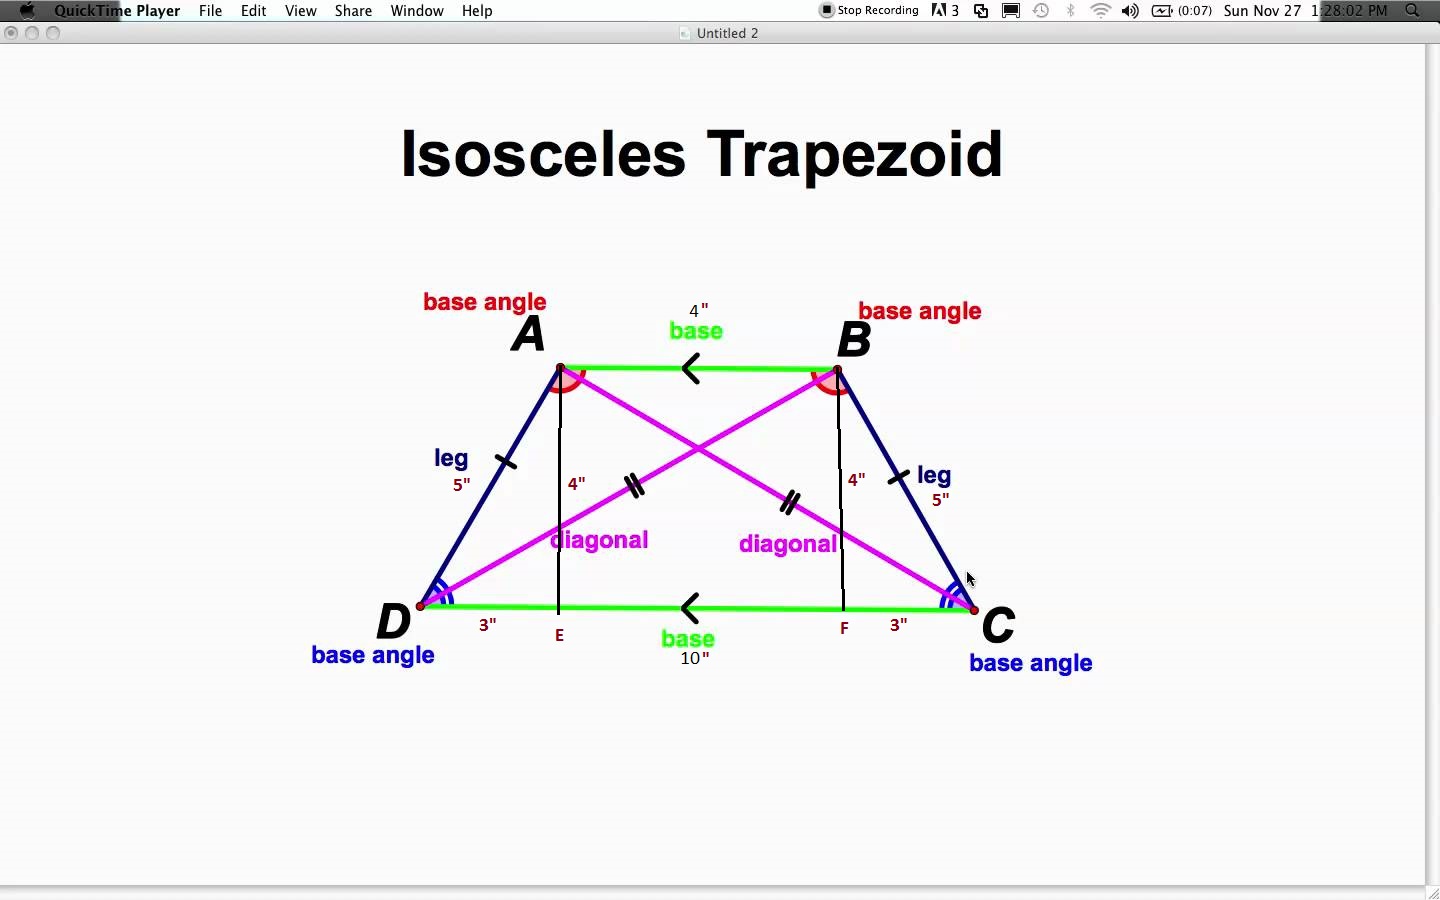 area of an isosceles trapezoid formula